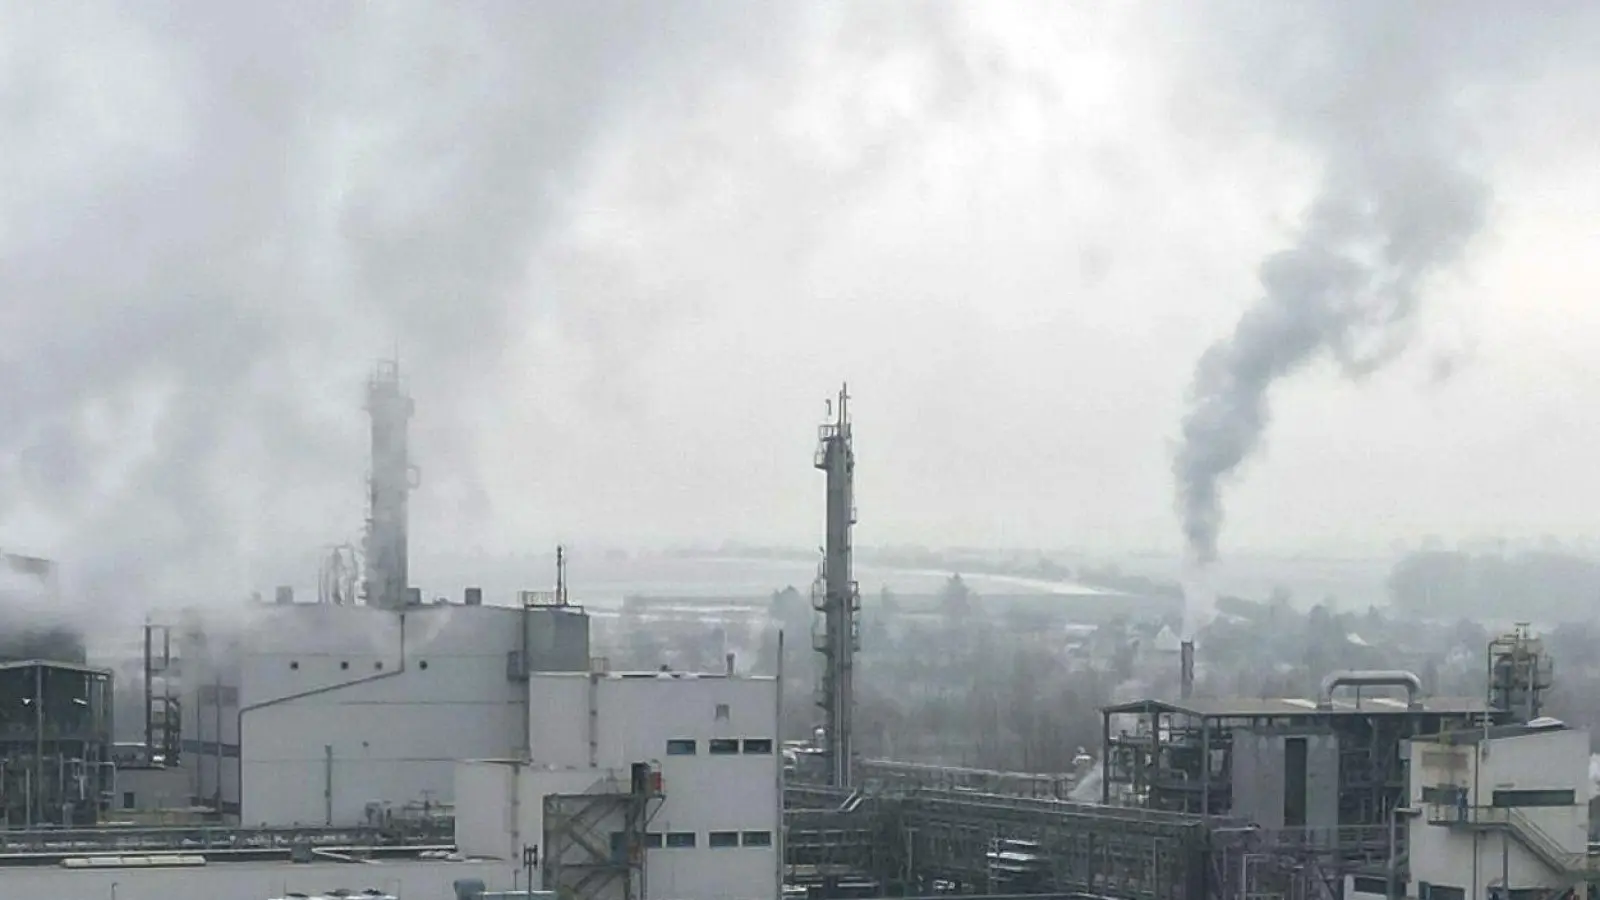 Wie das Statistische Bundesamt mitteilt, gab es starke Rückgänge bei der Produktion in der chemischen Industrie. (Foto: Bodo Schackow/dpa)